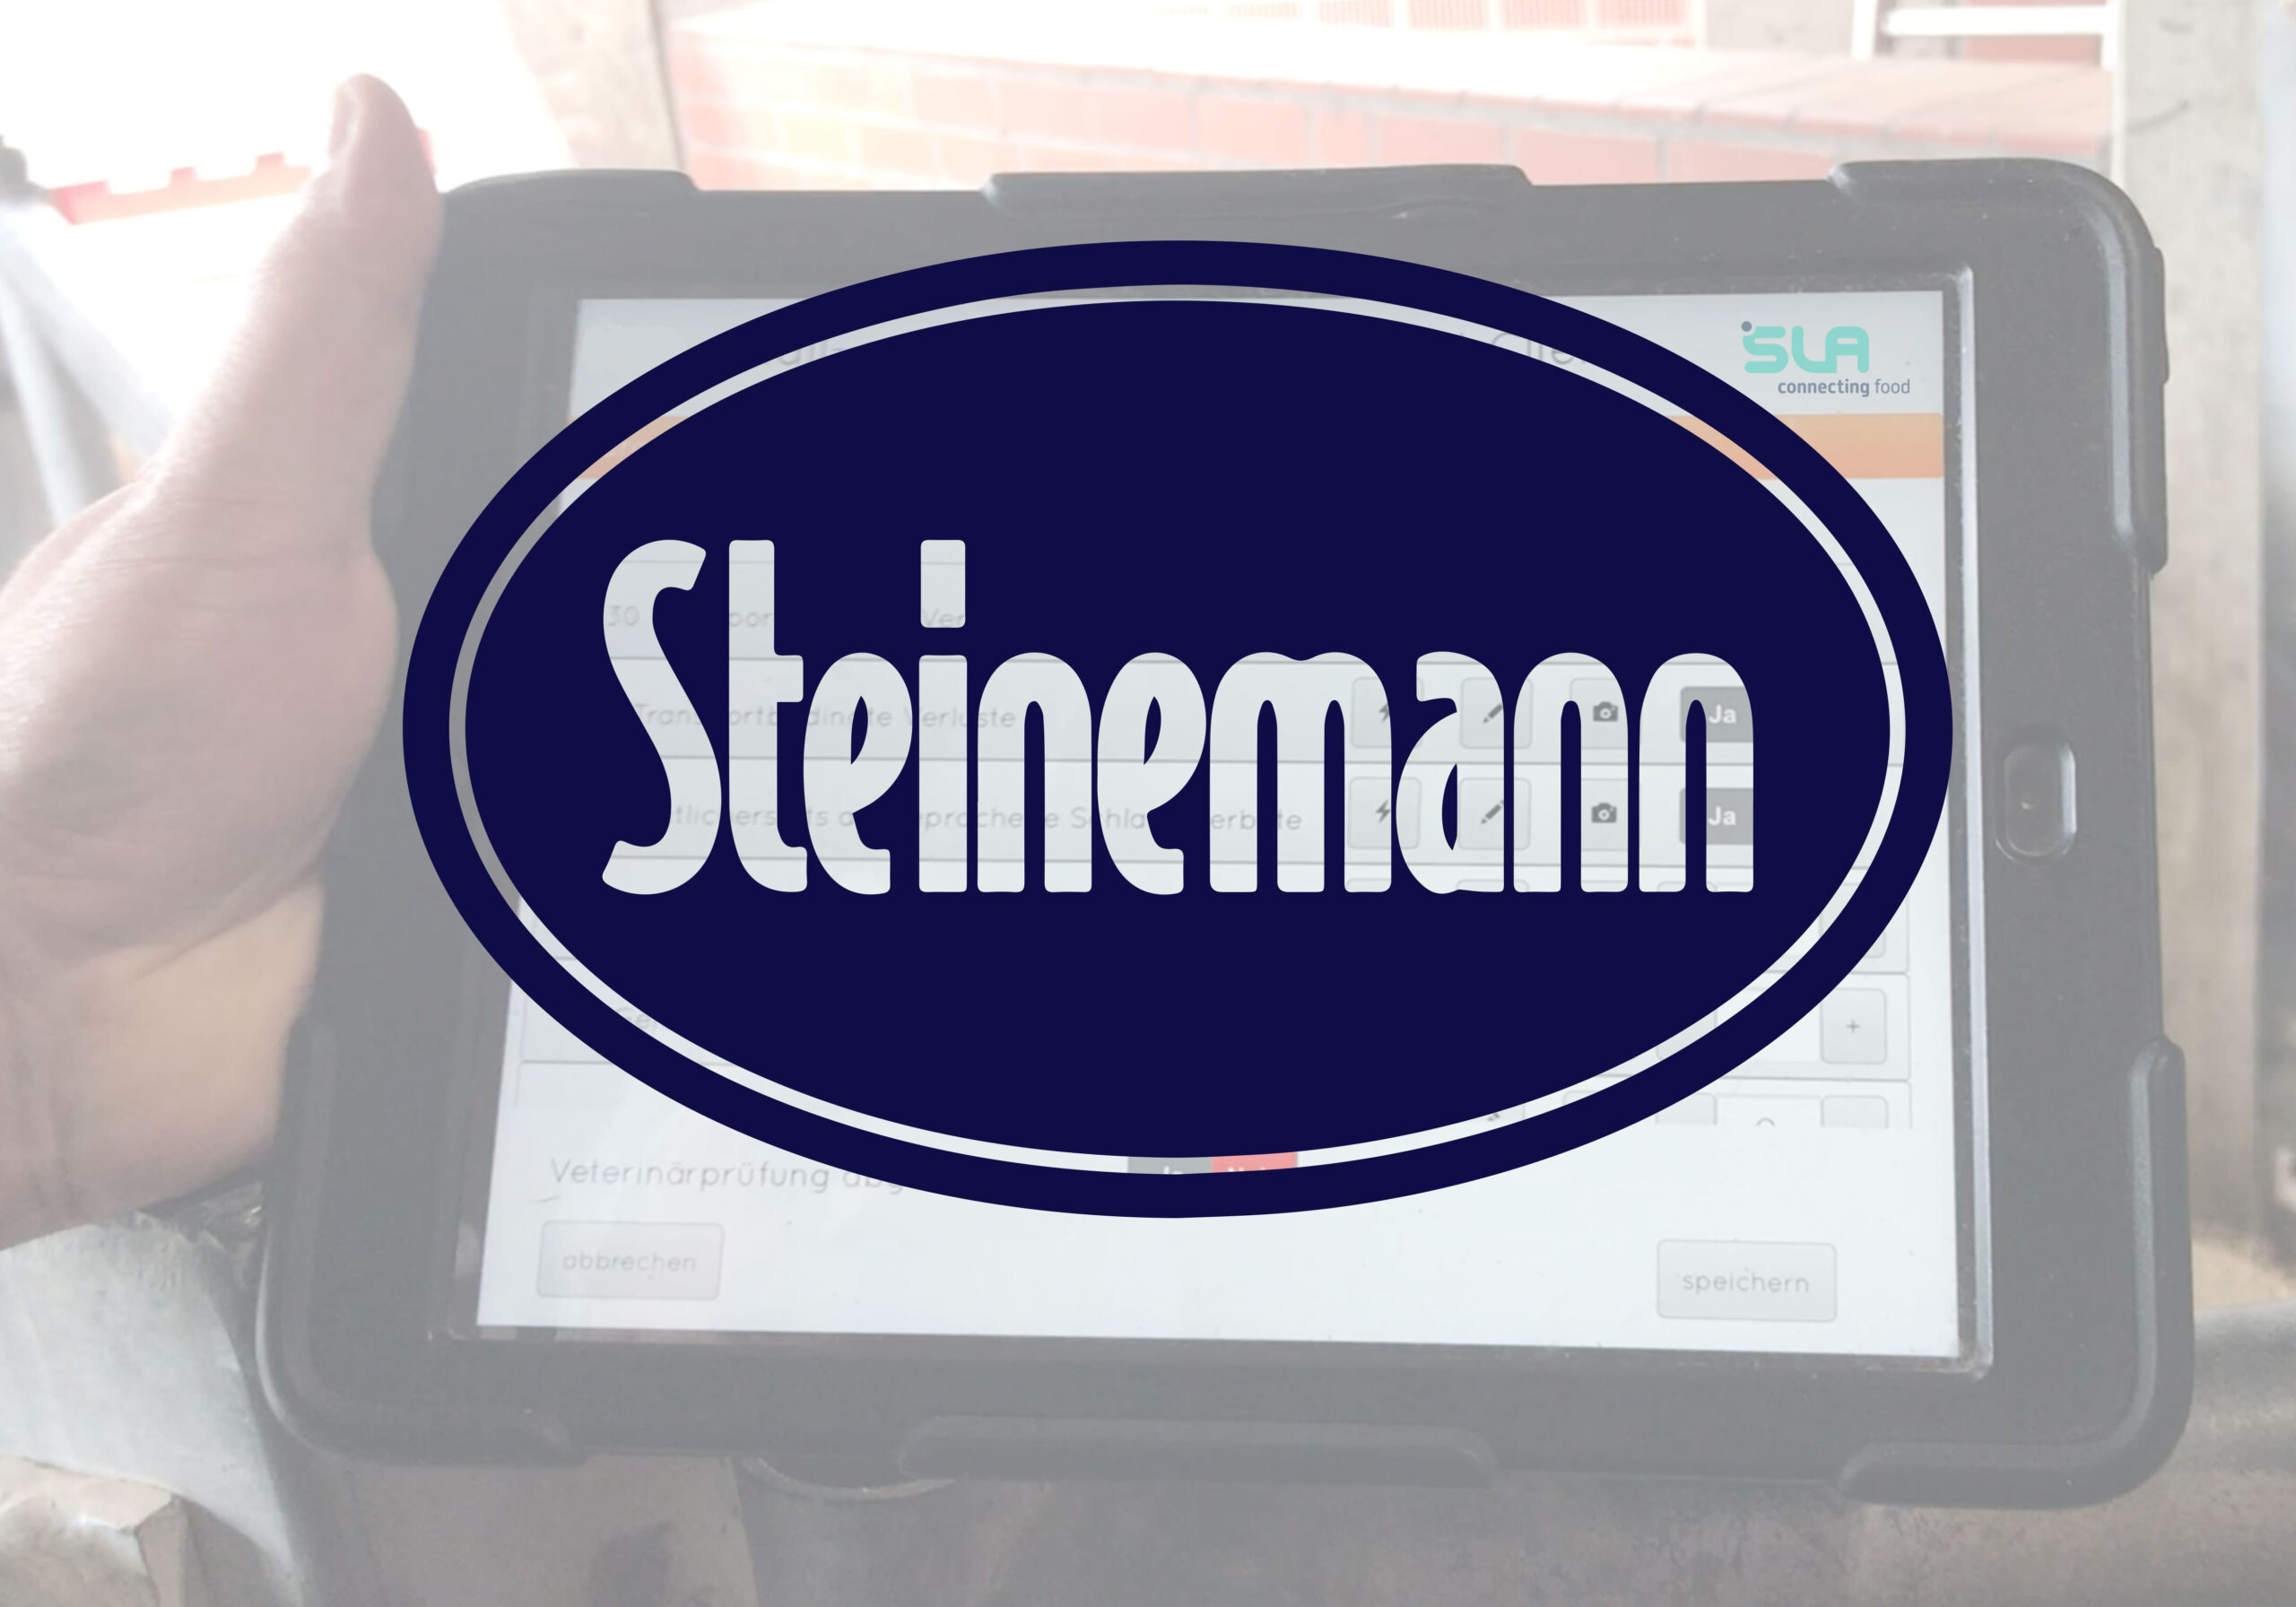 steinemann